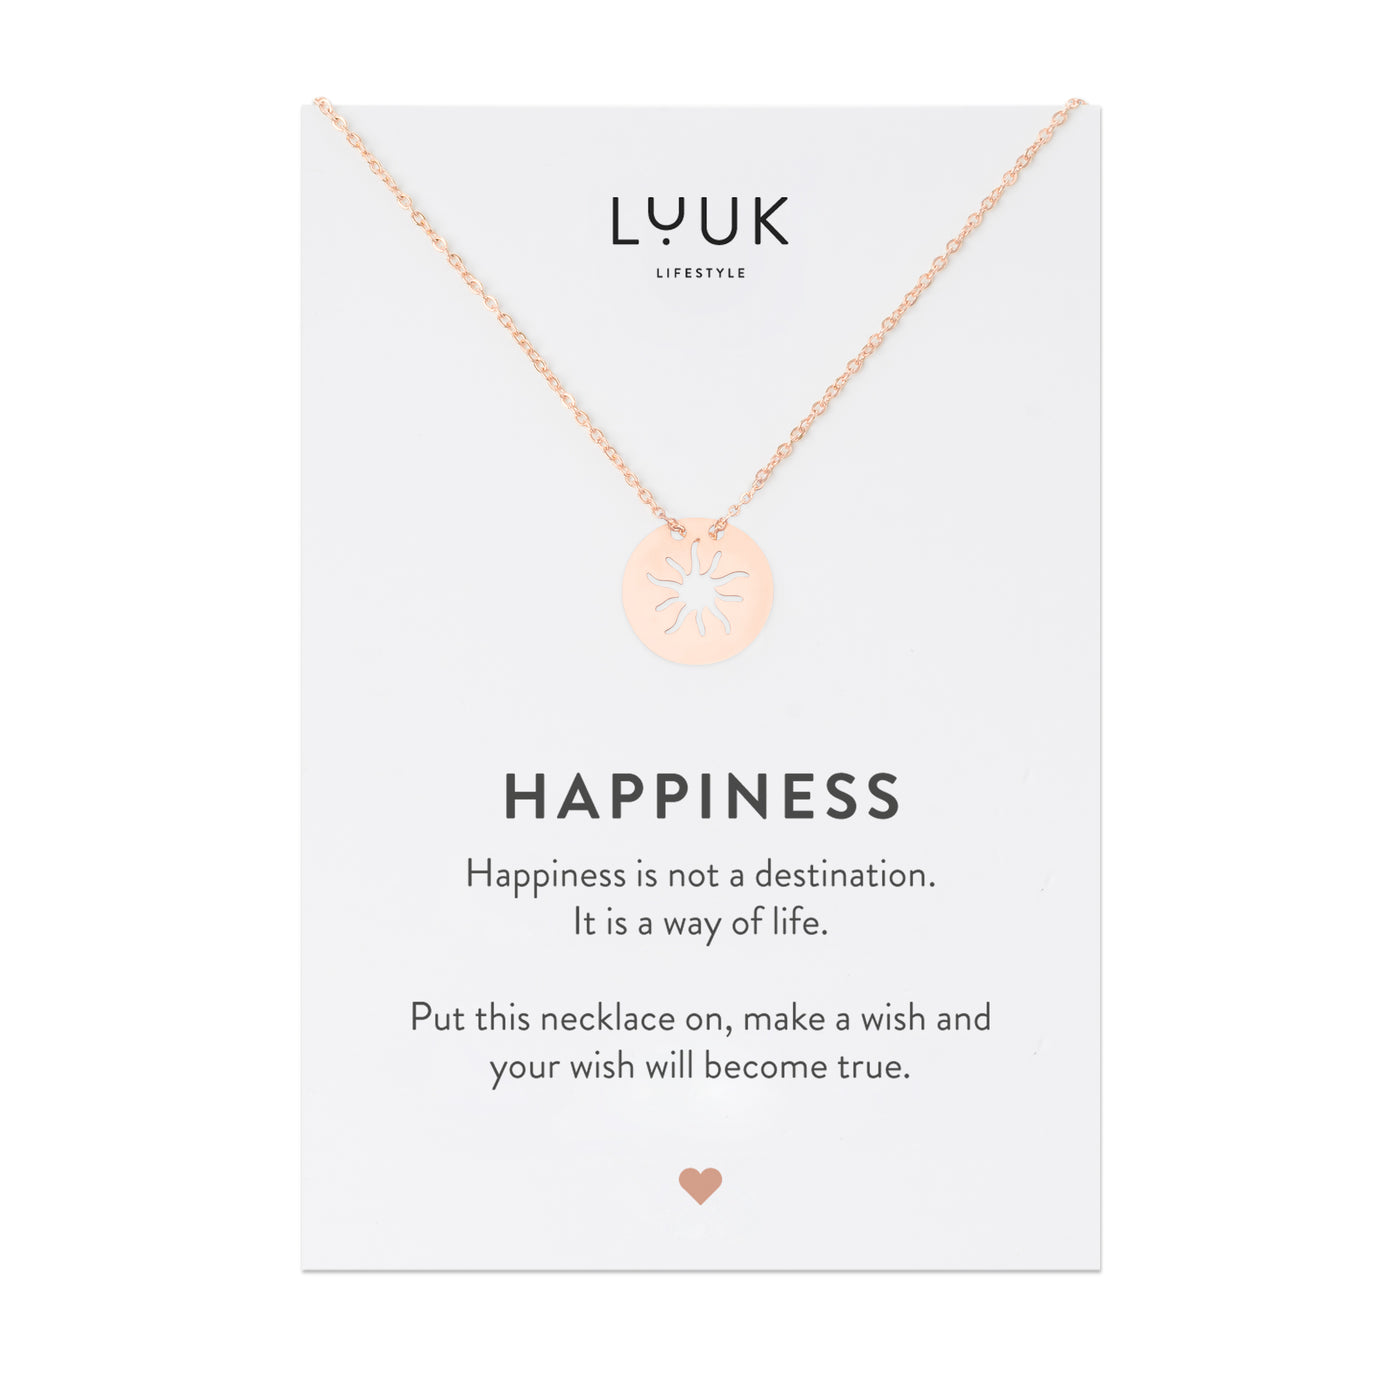 Rosegoldene Halskette mit Sonnen Anhänger auf Happiness Spruchkarte von Luuk Lifestyle 